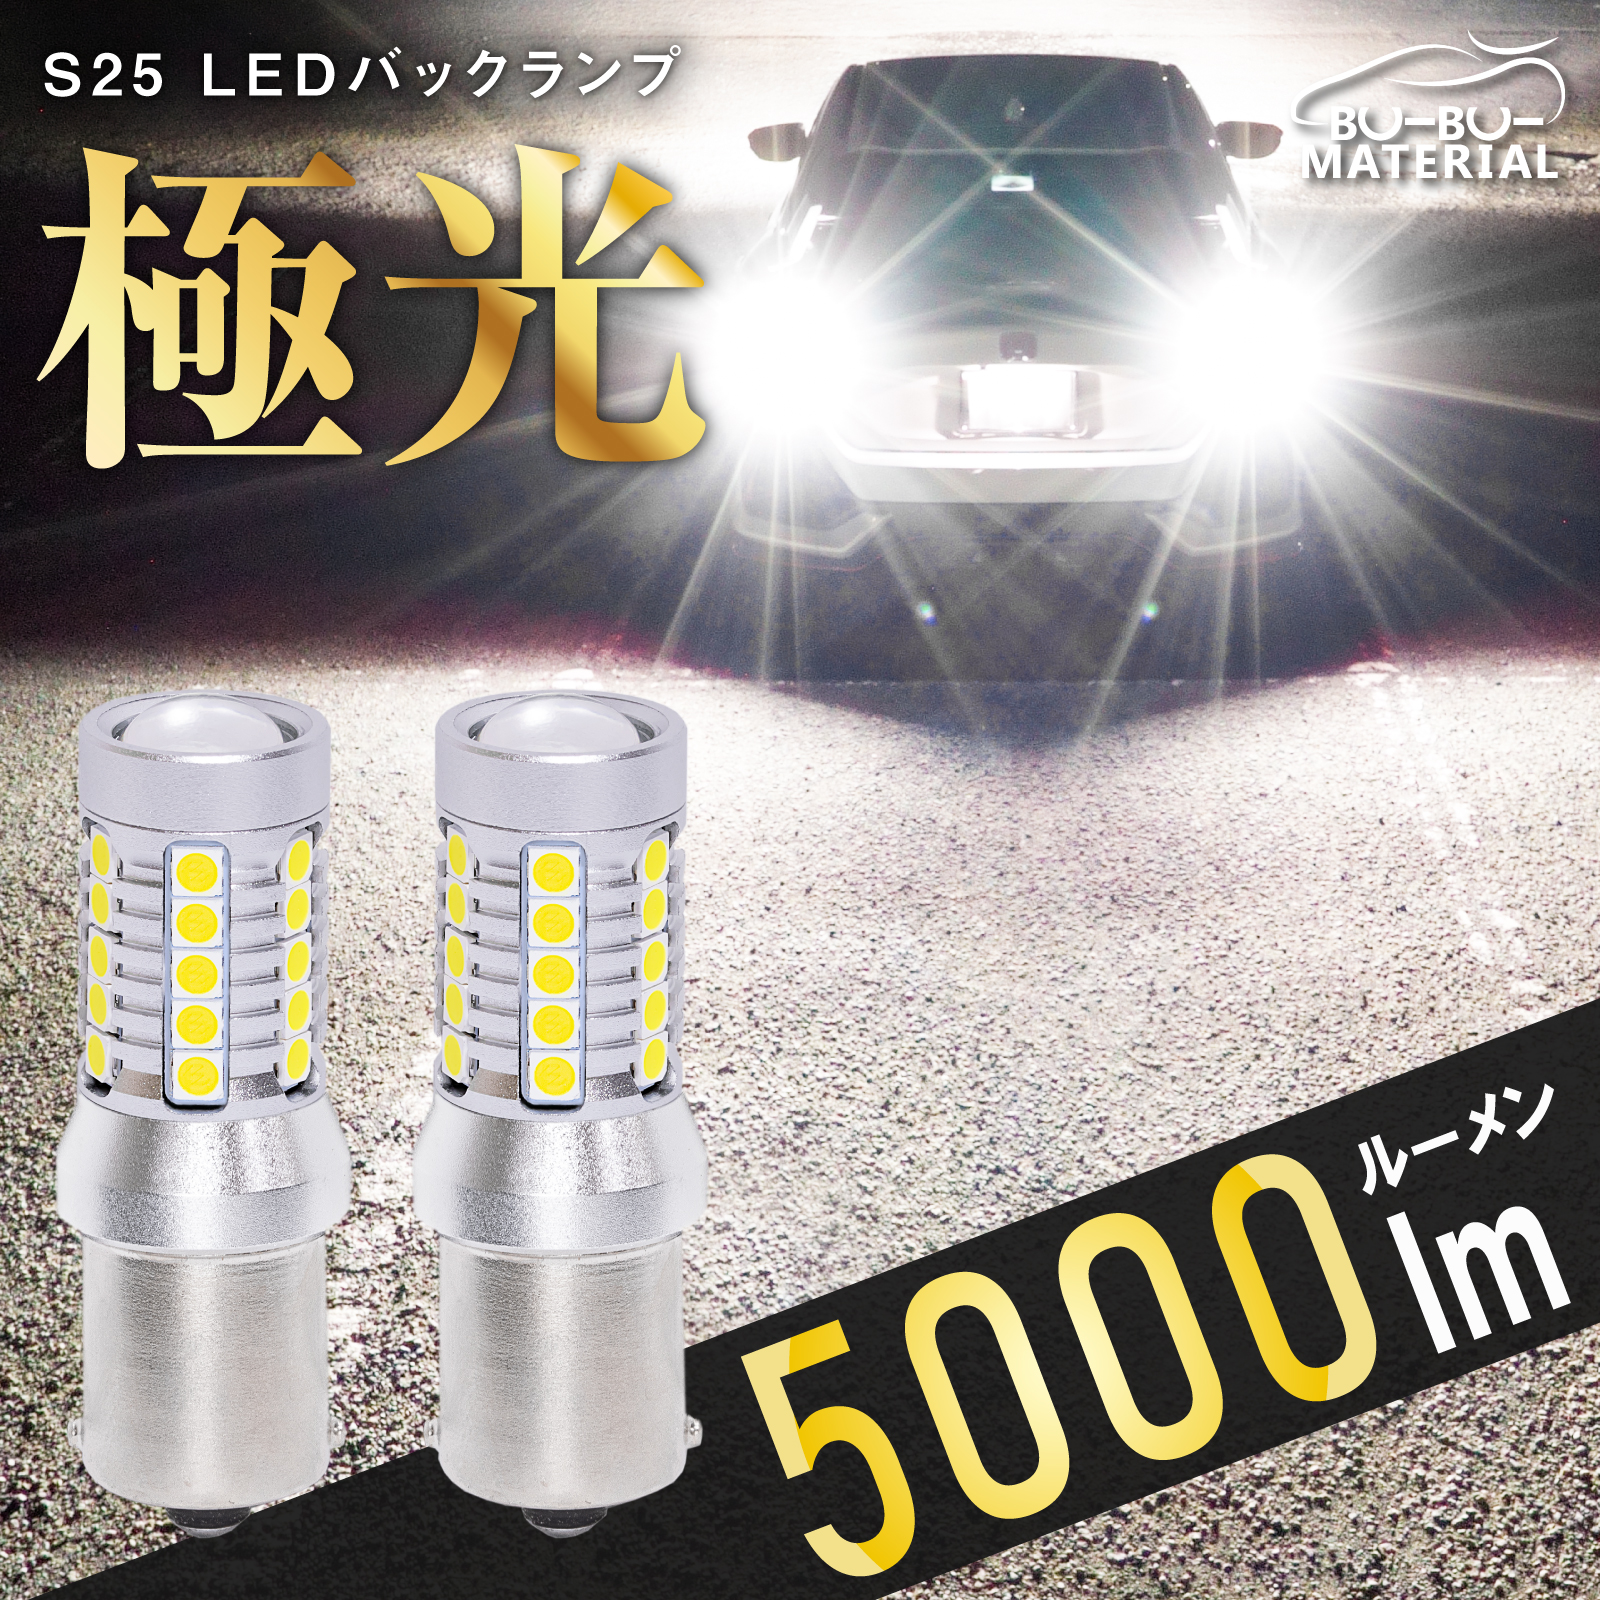 S25 LED シングル ホワイト バックランプ 爆光 車検対応 2個 5000LM 12V ぶーぶーマテリアル LEDの商品画像